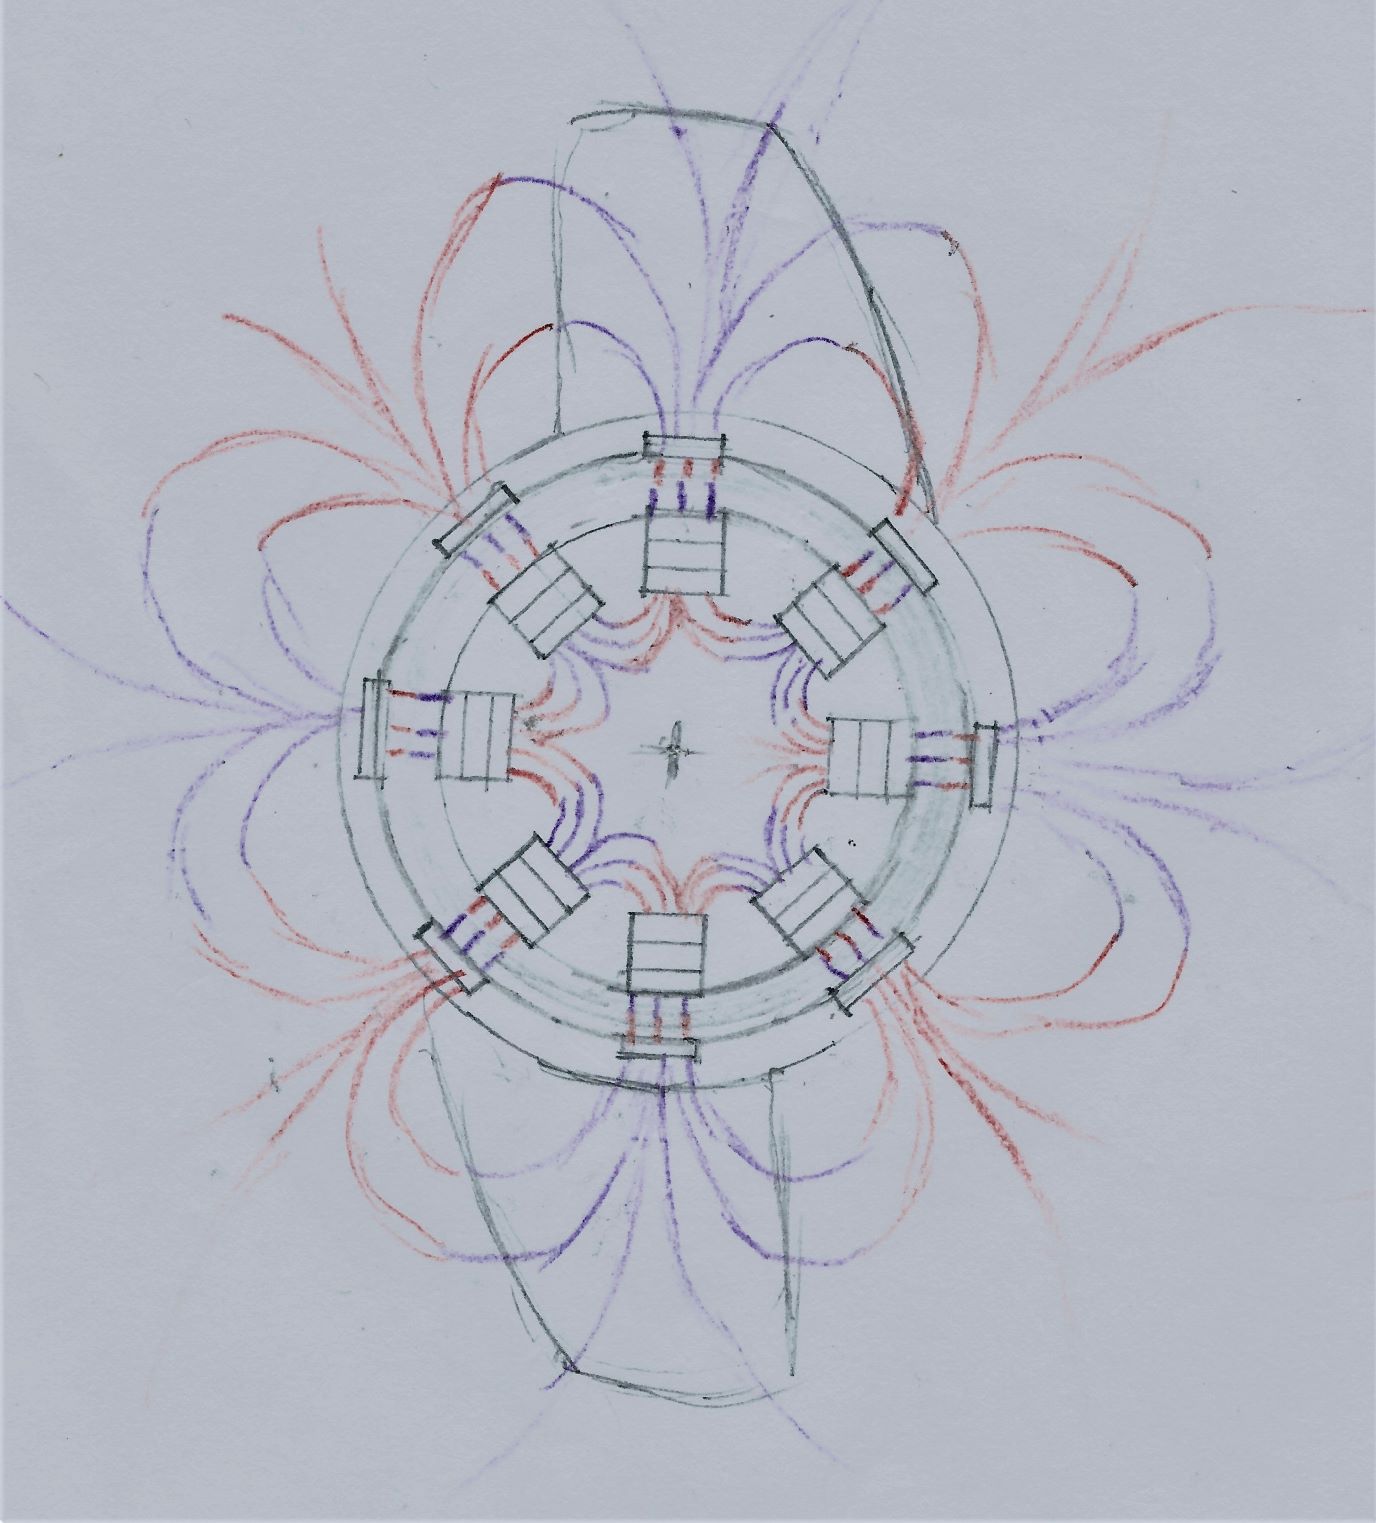 Magnetic Flux Diagram compressed.jpeg